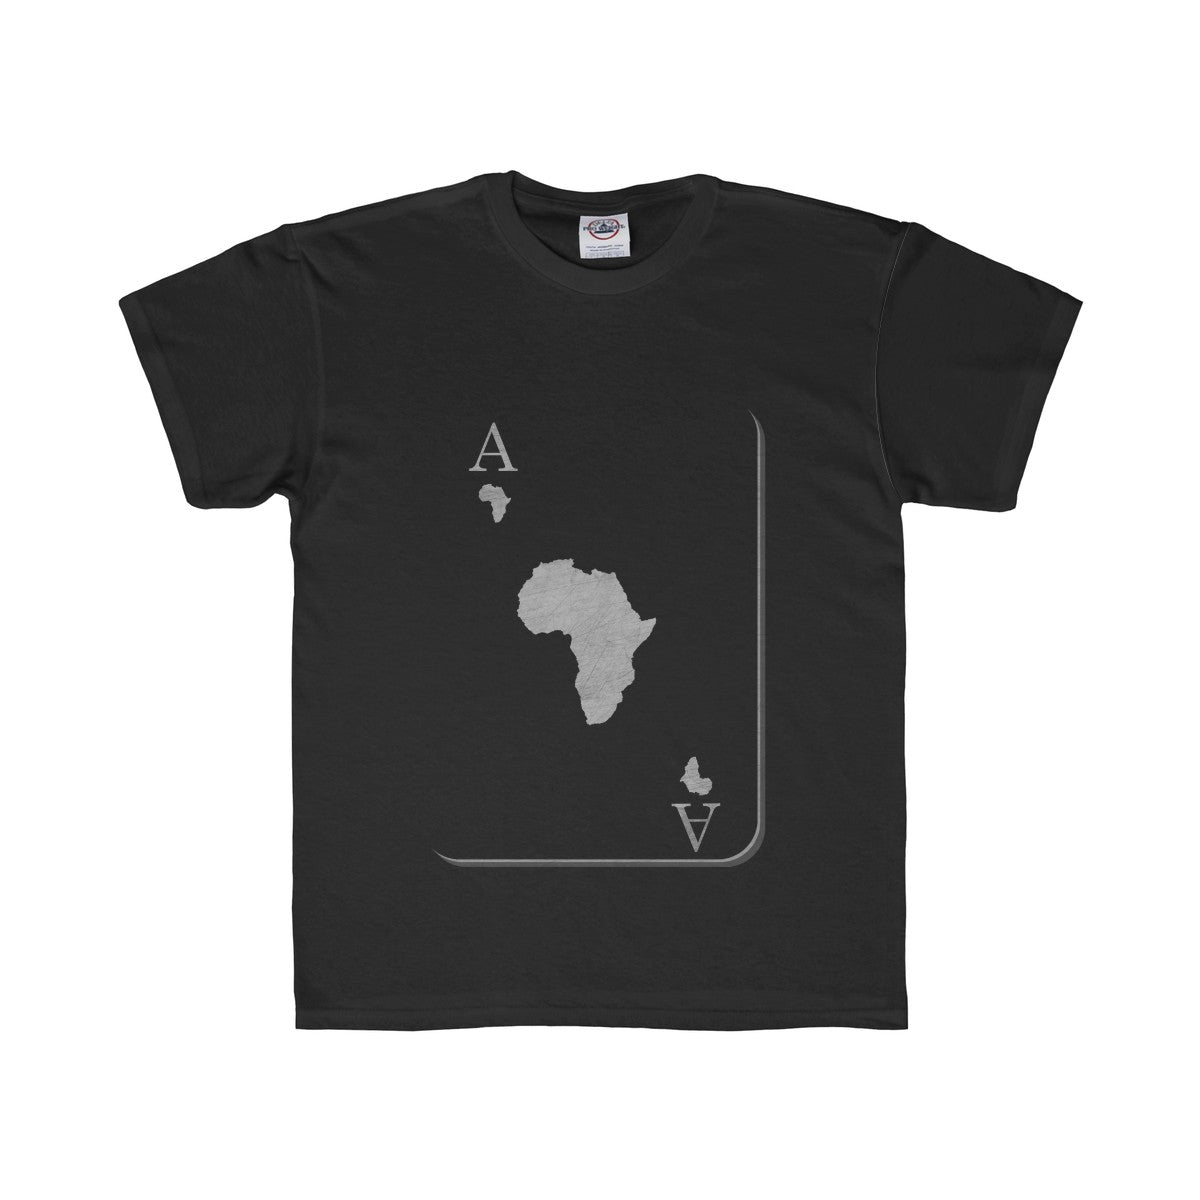 Africa Kids Shirt